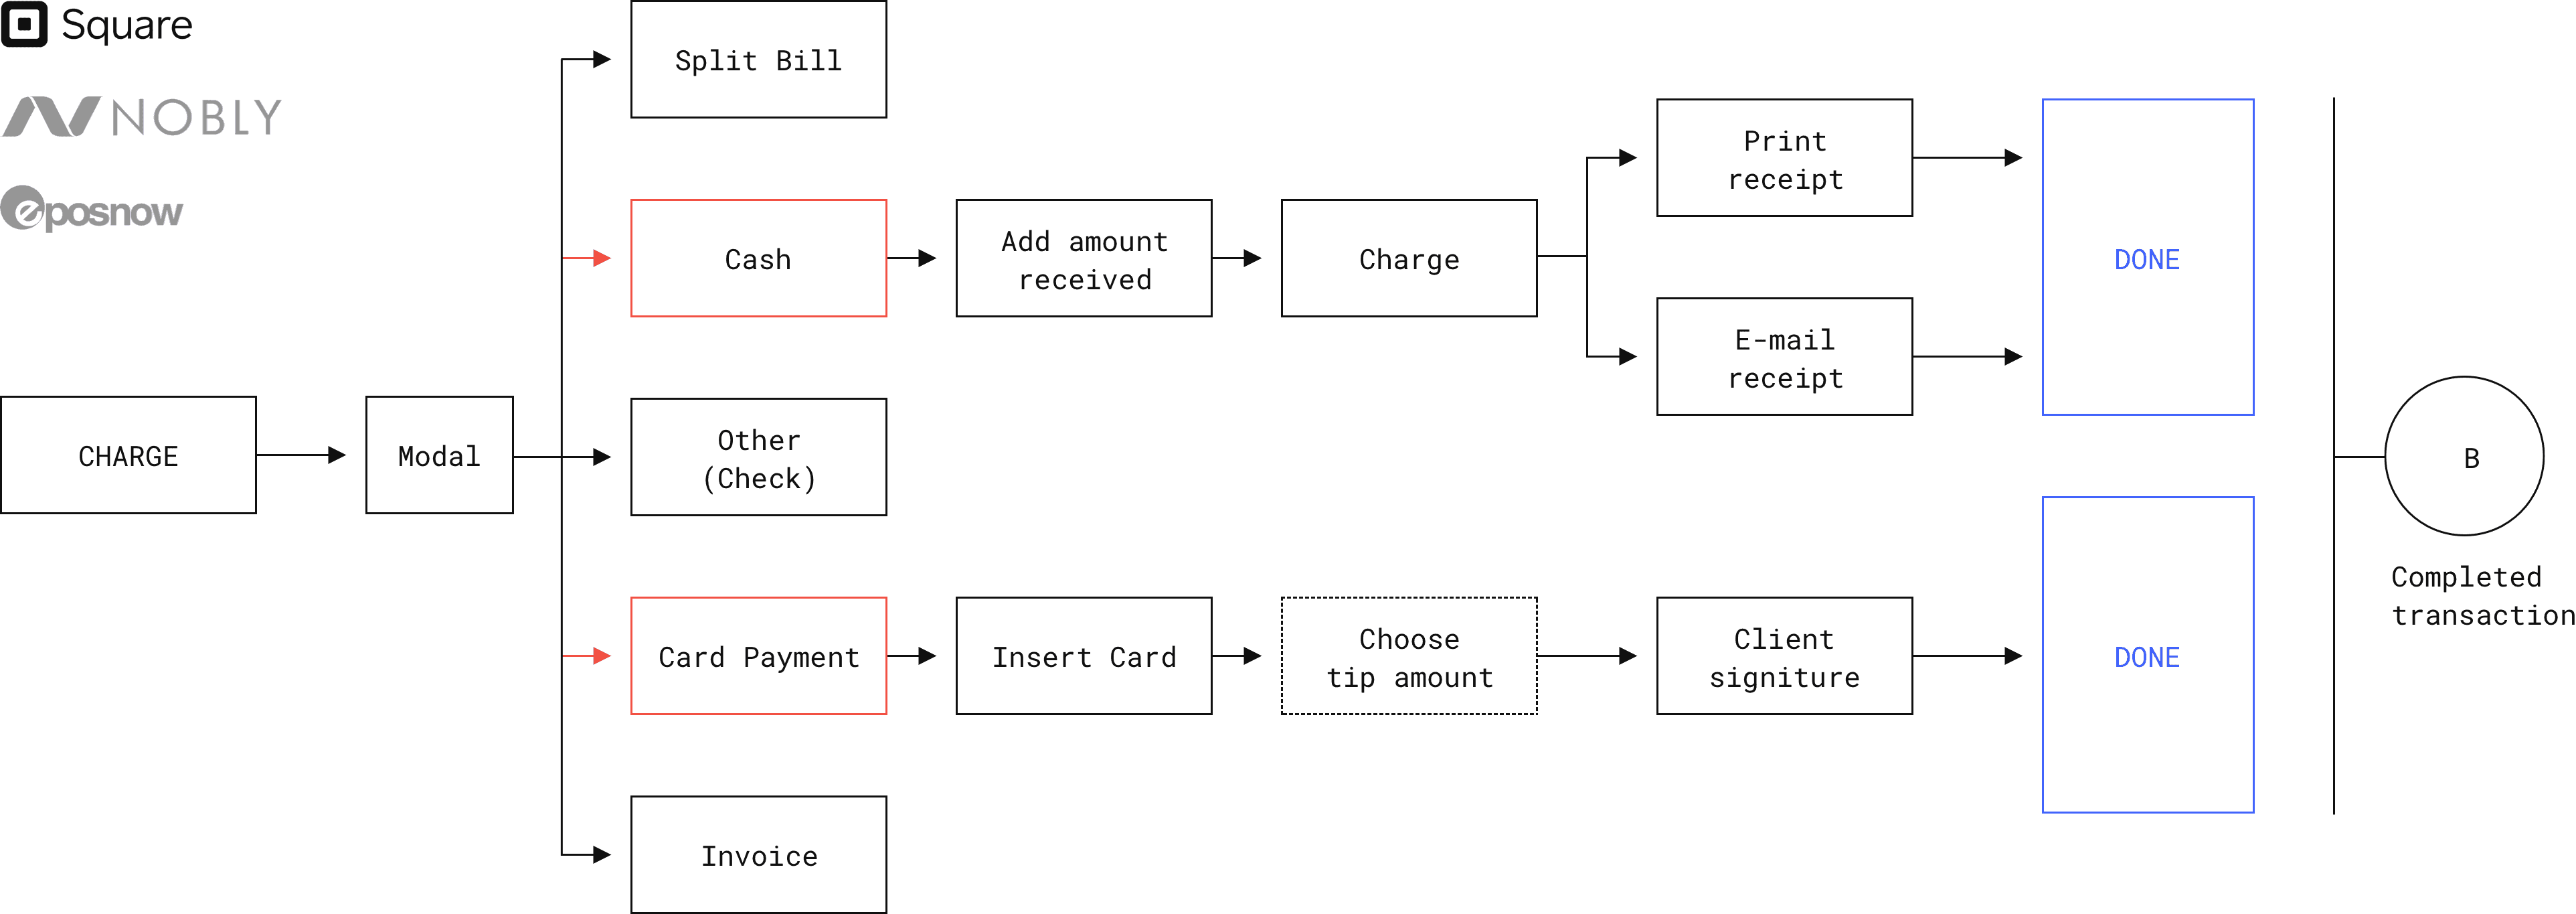 User Flow Diagramm eines Kassensystems für User Experience Audit